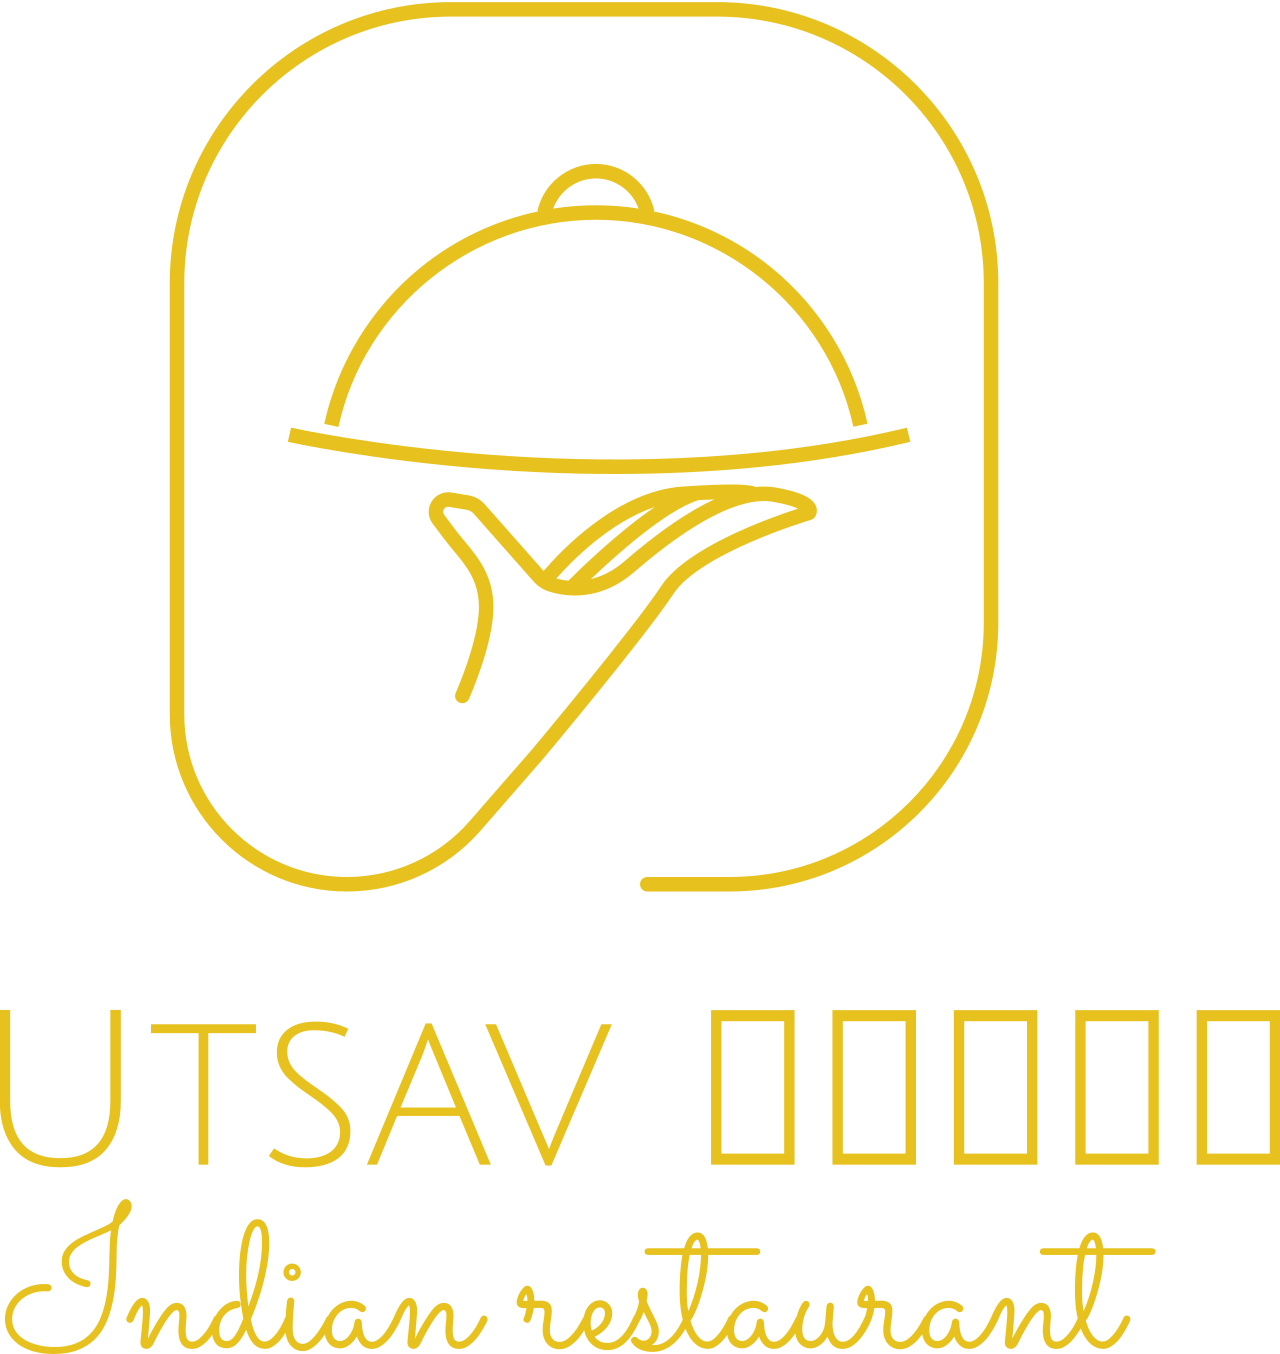 Utsav उत्सव's logo